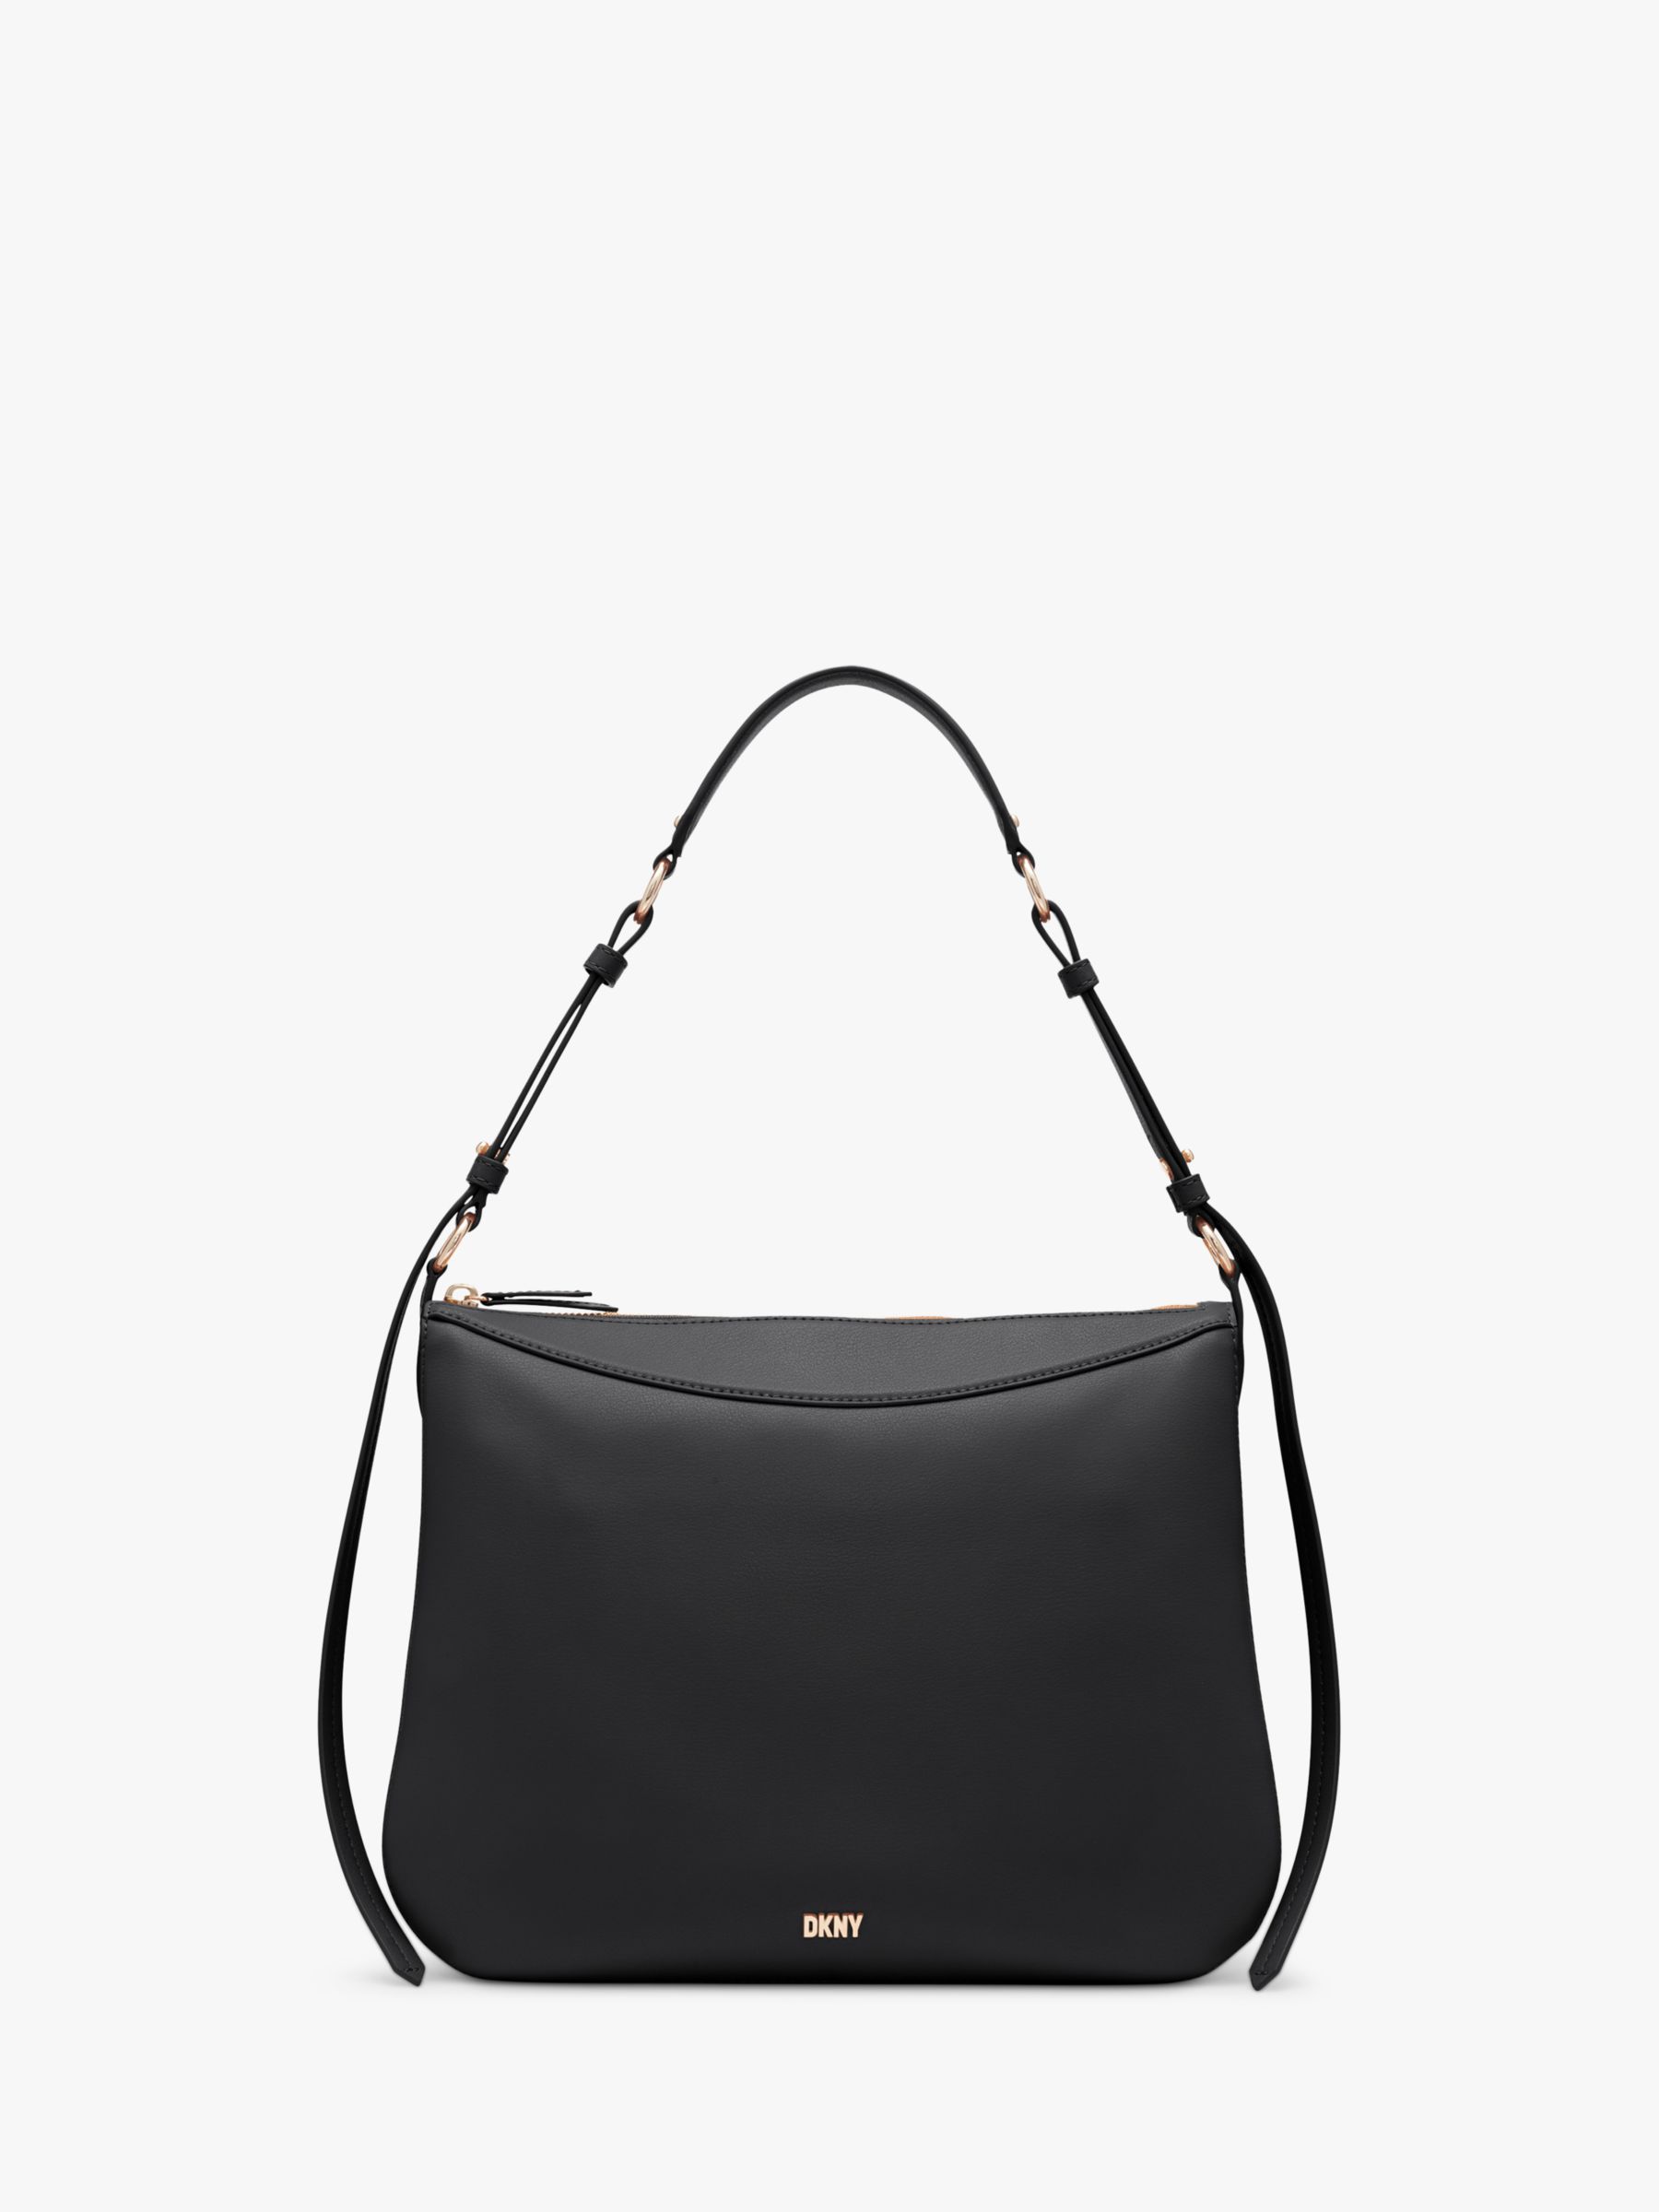 Кожаная сумка через плечо Hobo DKNY, черный сумка хобо dkny черный